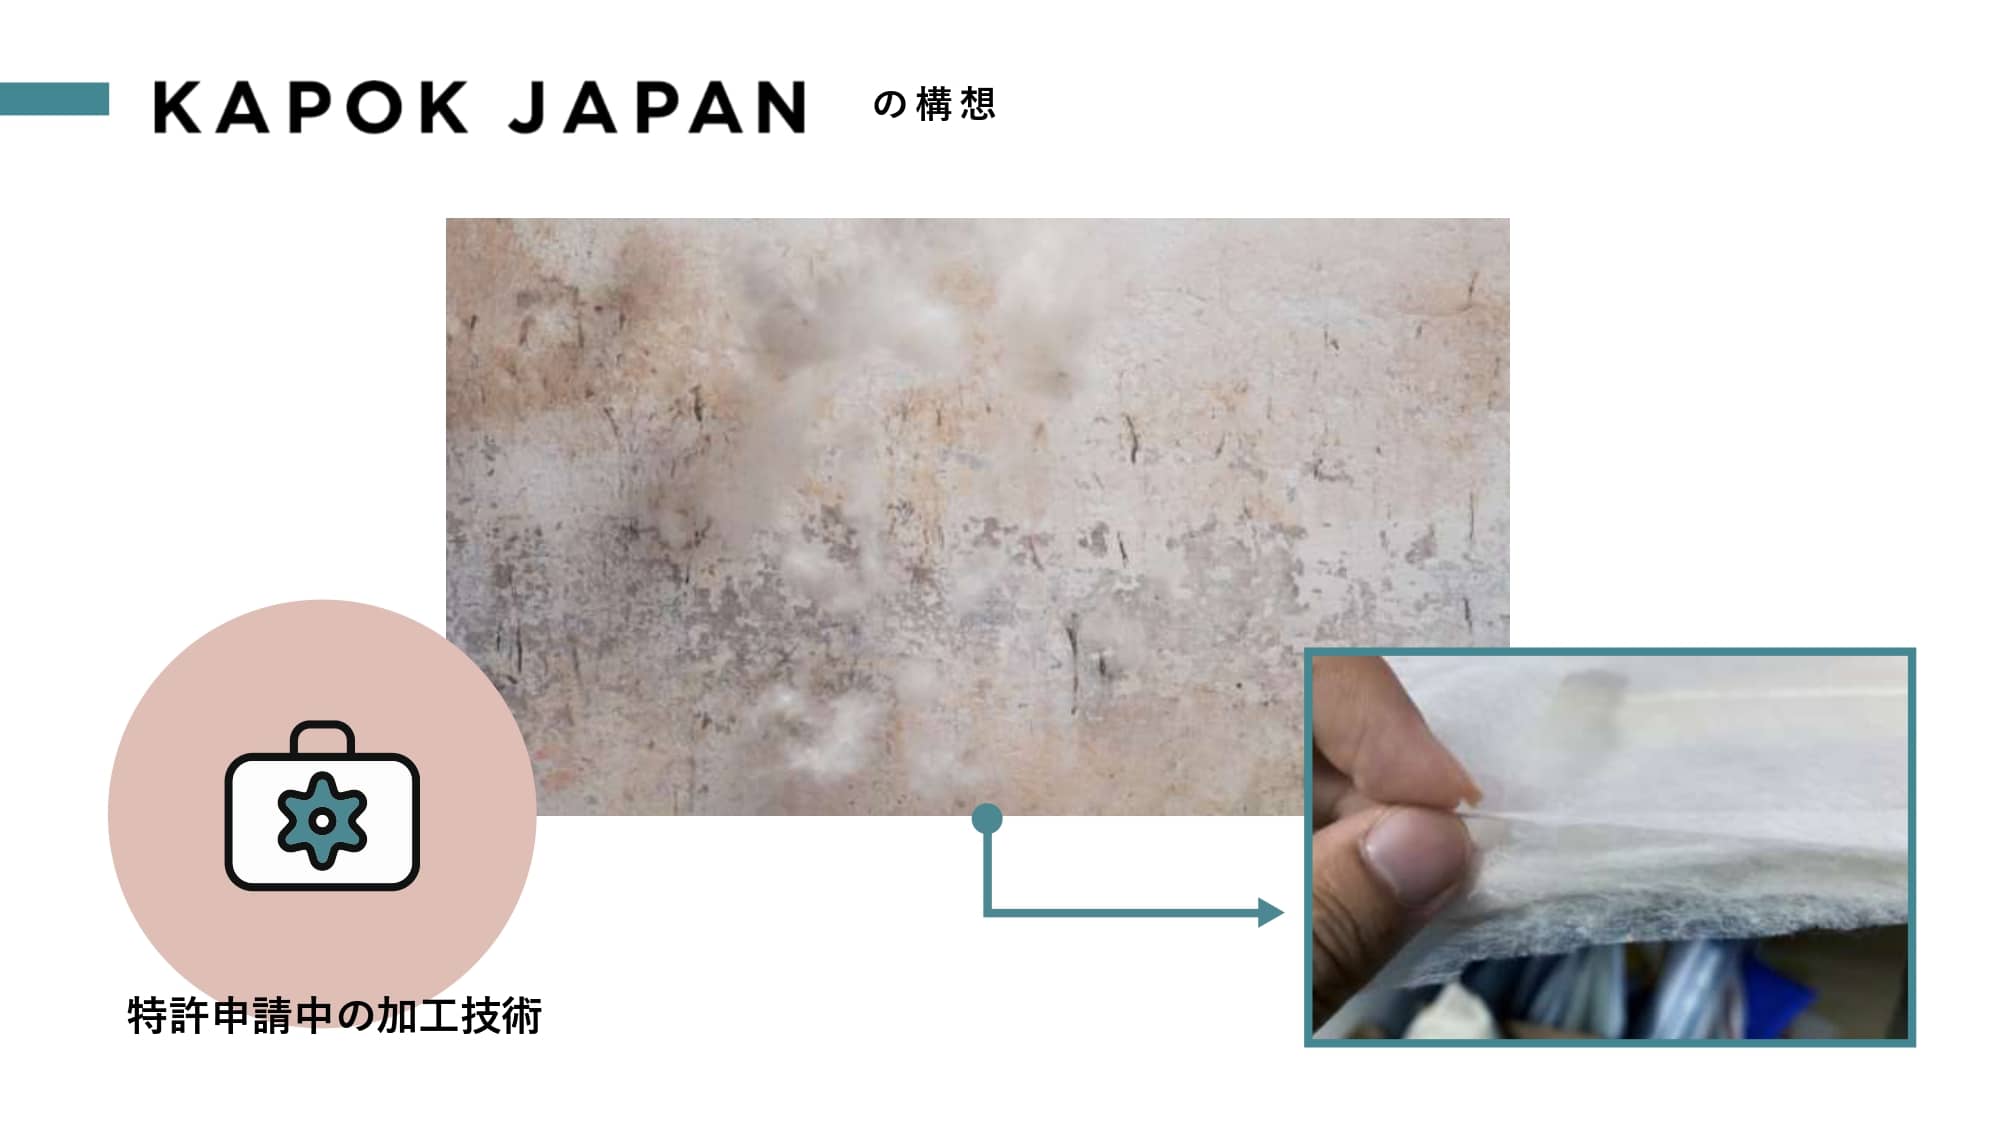 5mmでダウンの暖かさ 循環型 高機能の植物素材で ファッションを楽しむ未来を創る Kapok Japan Icc Fukuoka 21 Icc Industry Co Creation